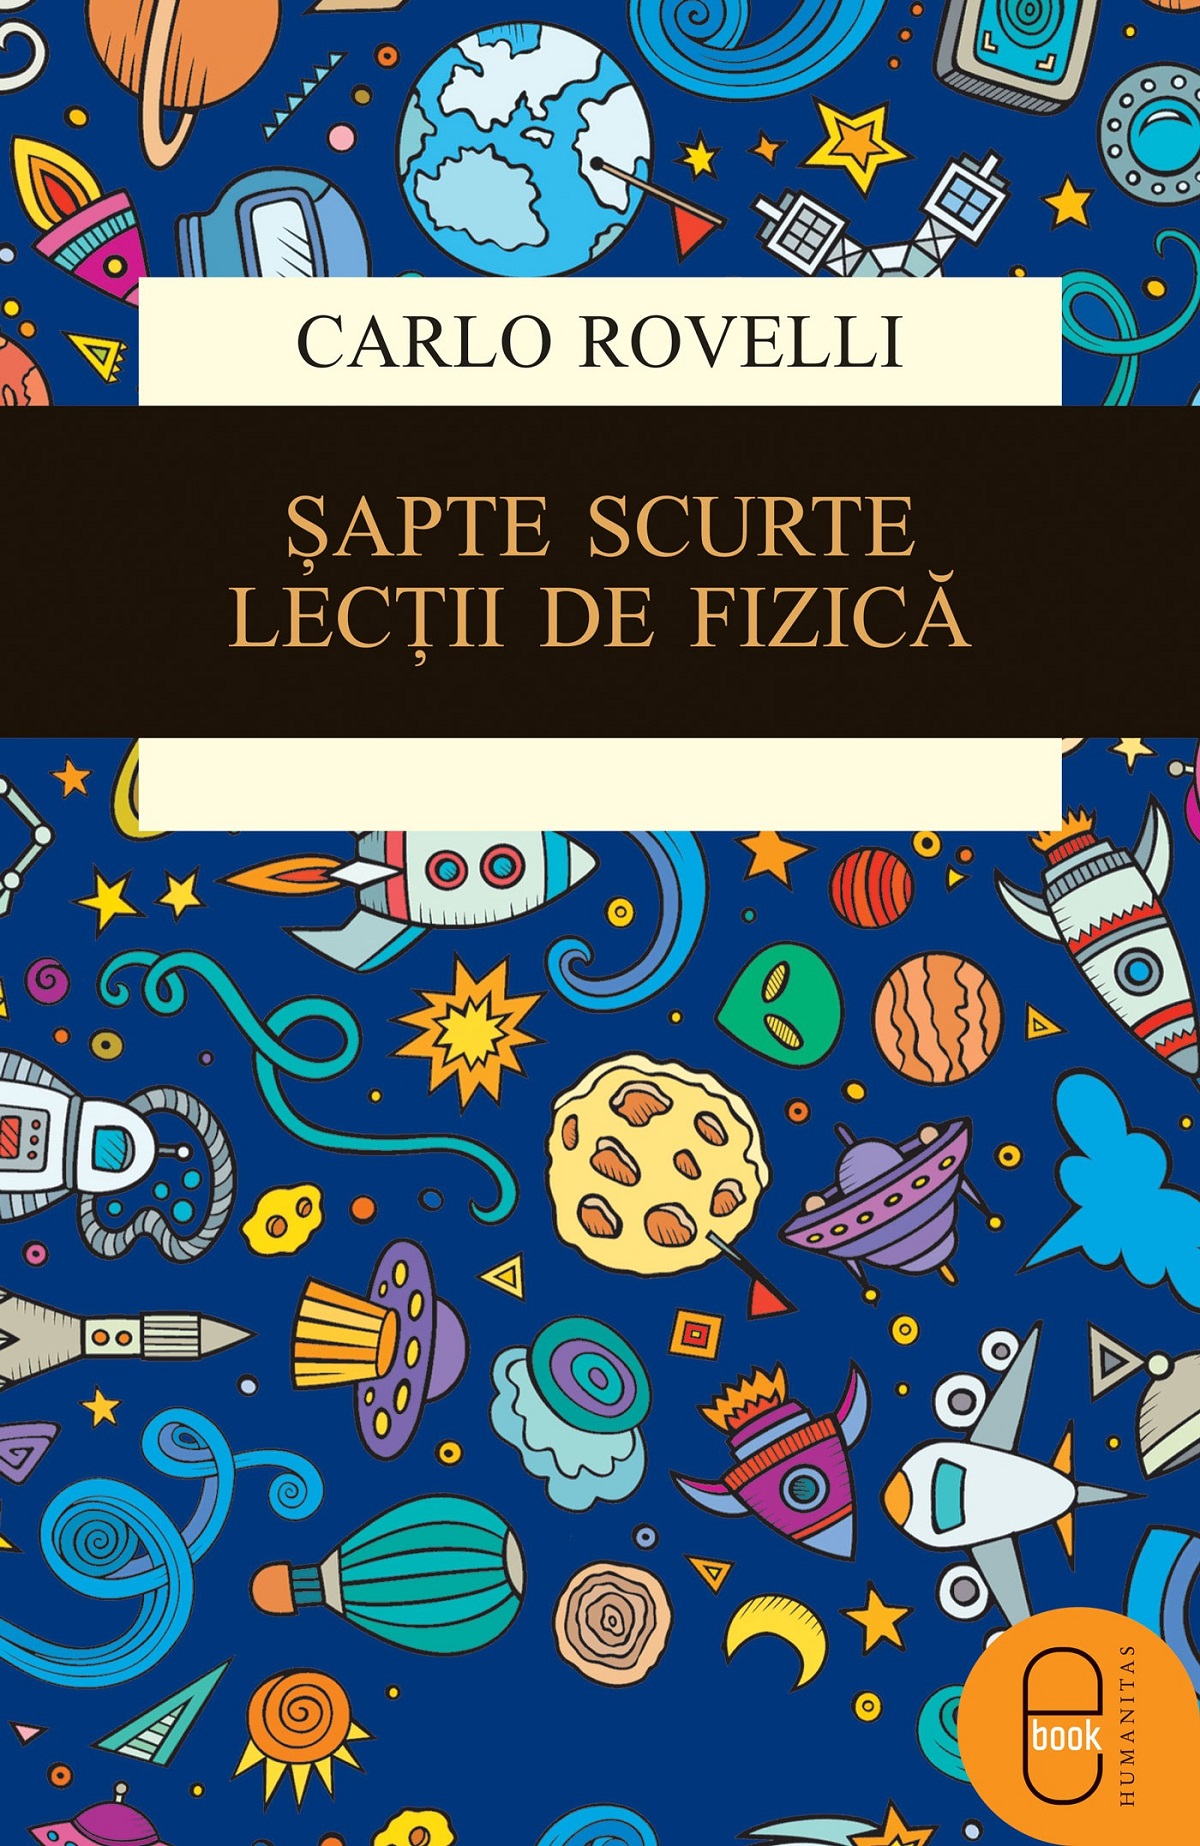 eBook Sapte scurte lectii de fizica - Carlo Rovelli